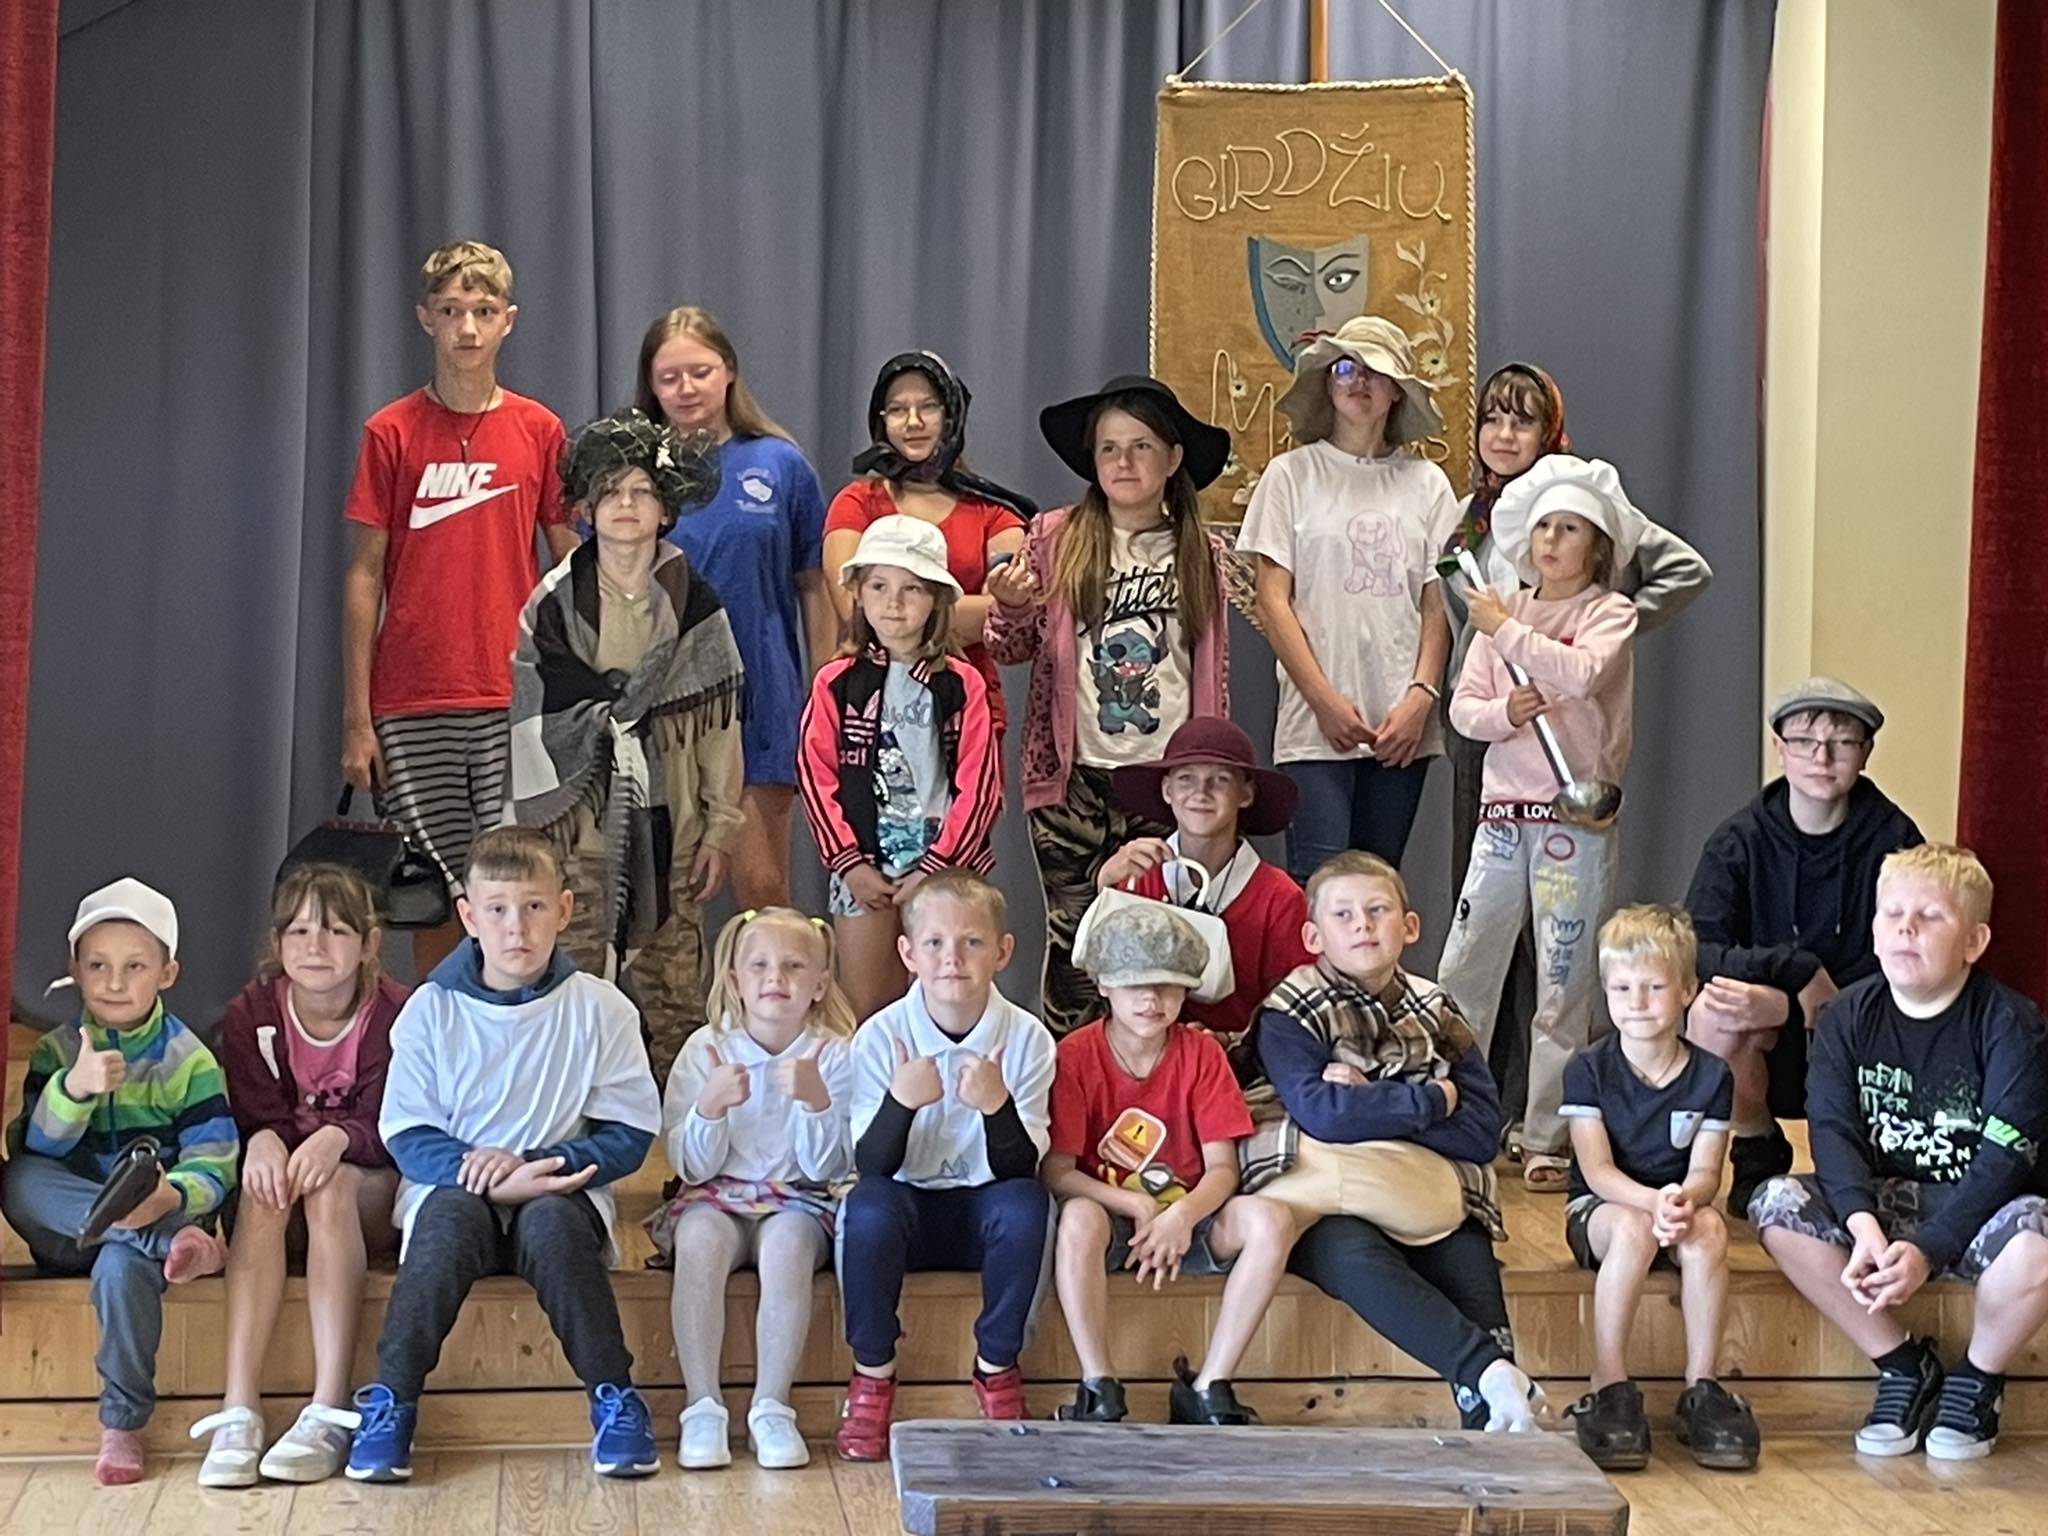 Jurbarko kultūros centro Girdžių skyrių aplankė vaikų vasaros stovyklos dalyviai